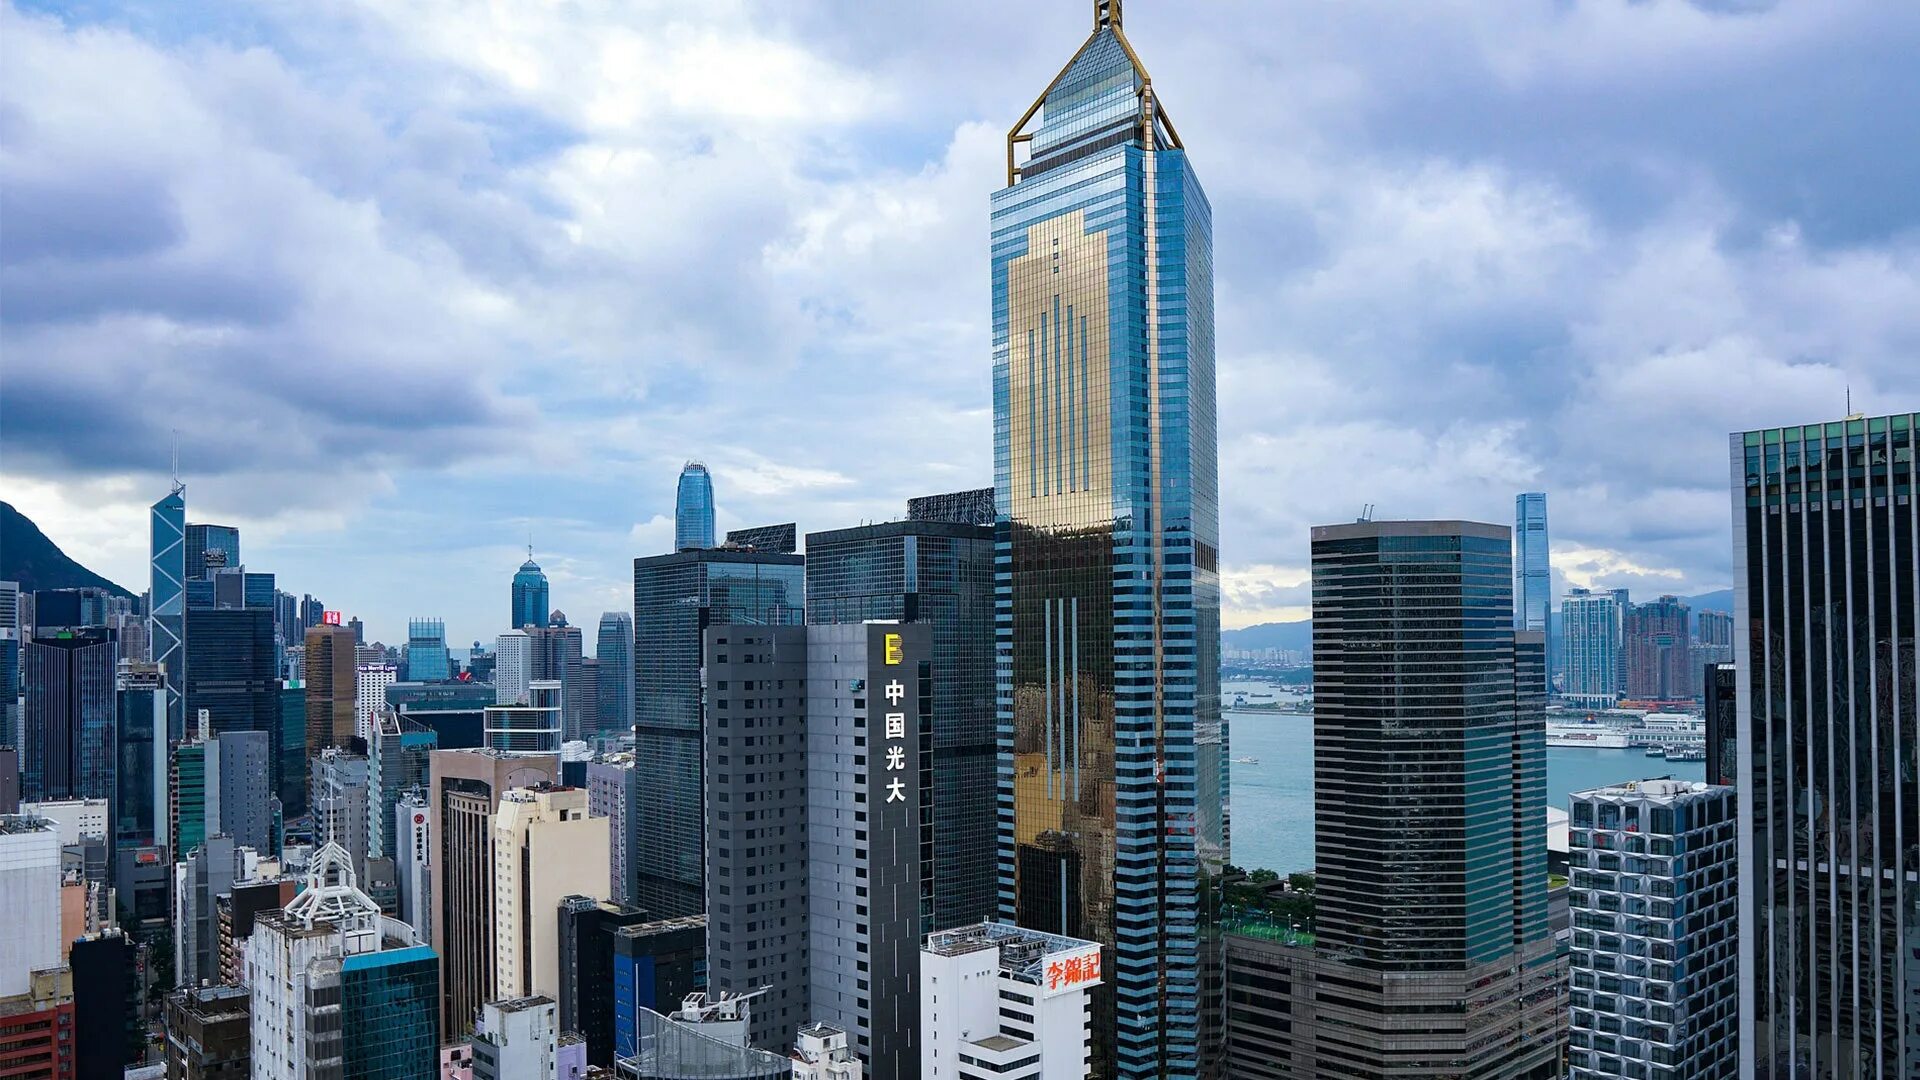 Гонг Конг небоскребы. Гонконг провинция. Гонконг высотки. Гонконг панорама 2020. Most expensive cities